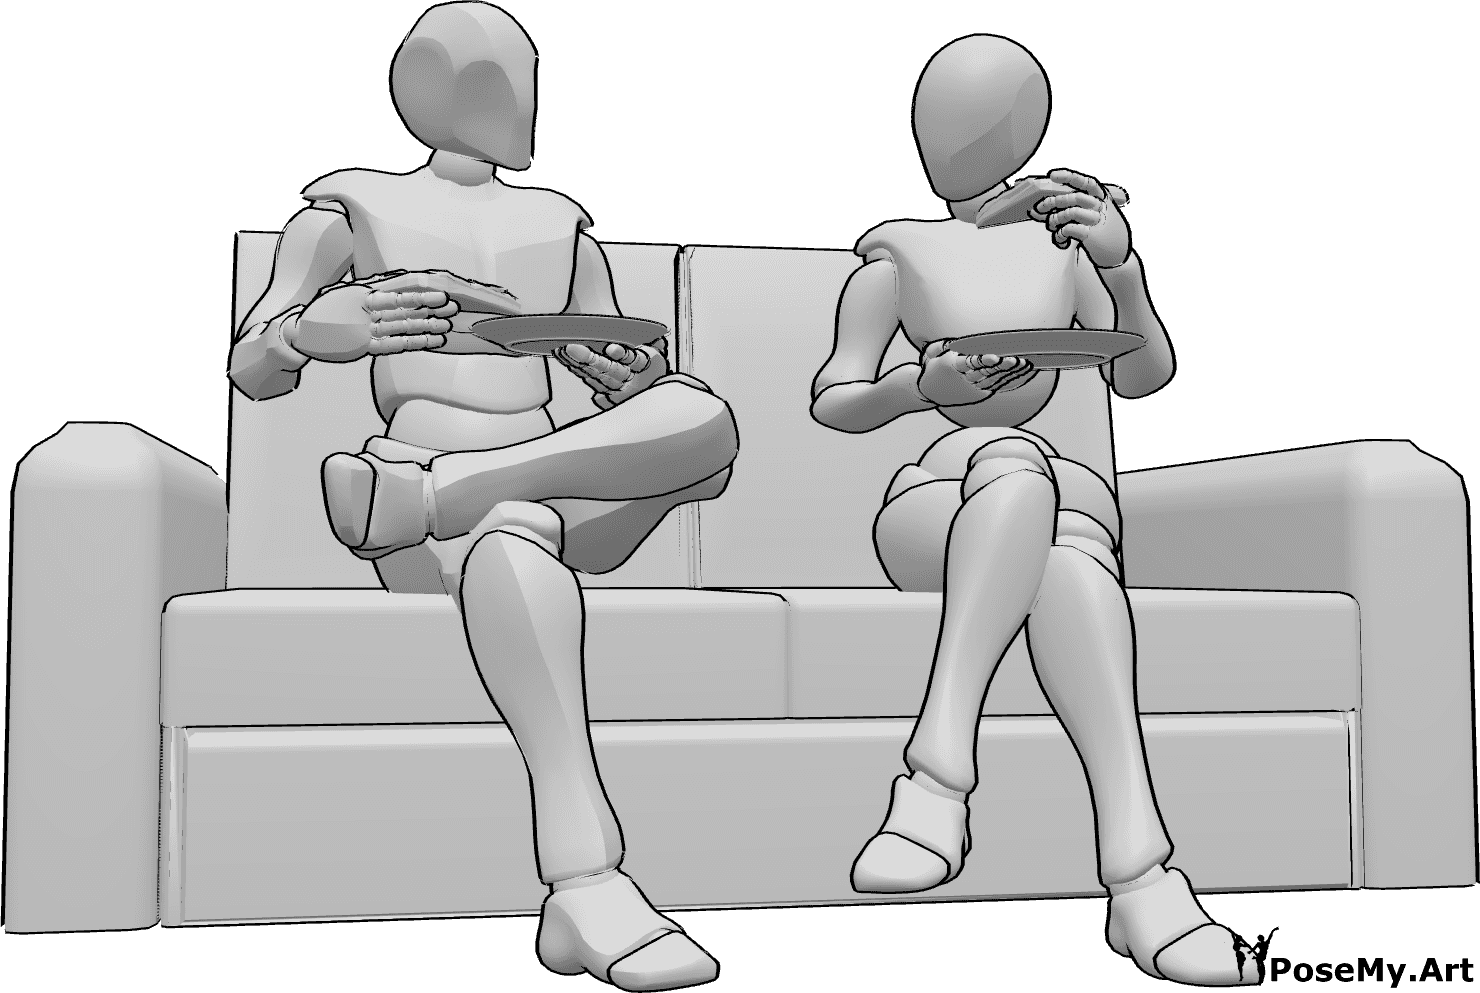 Referencia de poses- Postura sentada comiendo pizza - Mujer y hombre están sentados en el sofá y comiendo pizza, sosteniendo platos y porciones de pizza